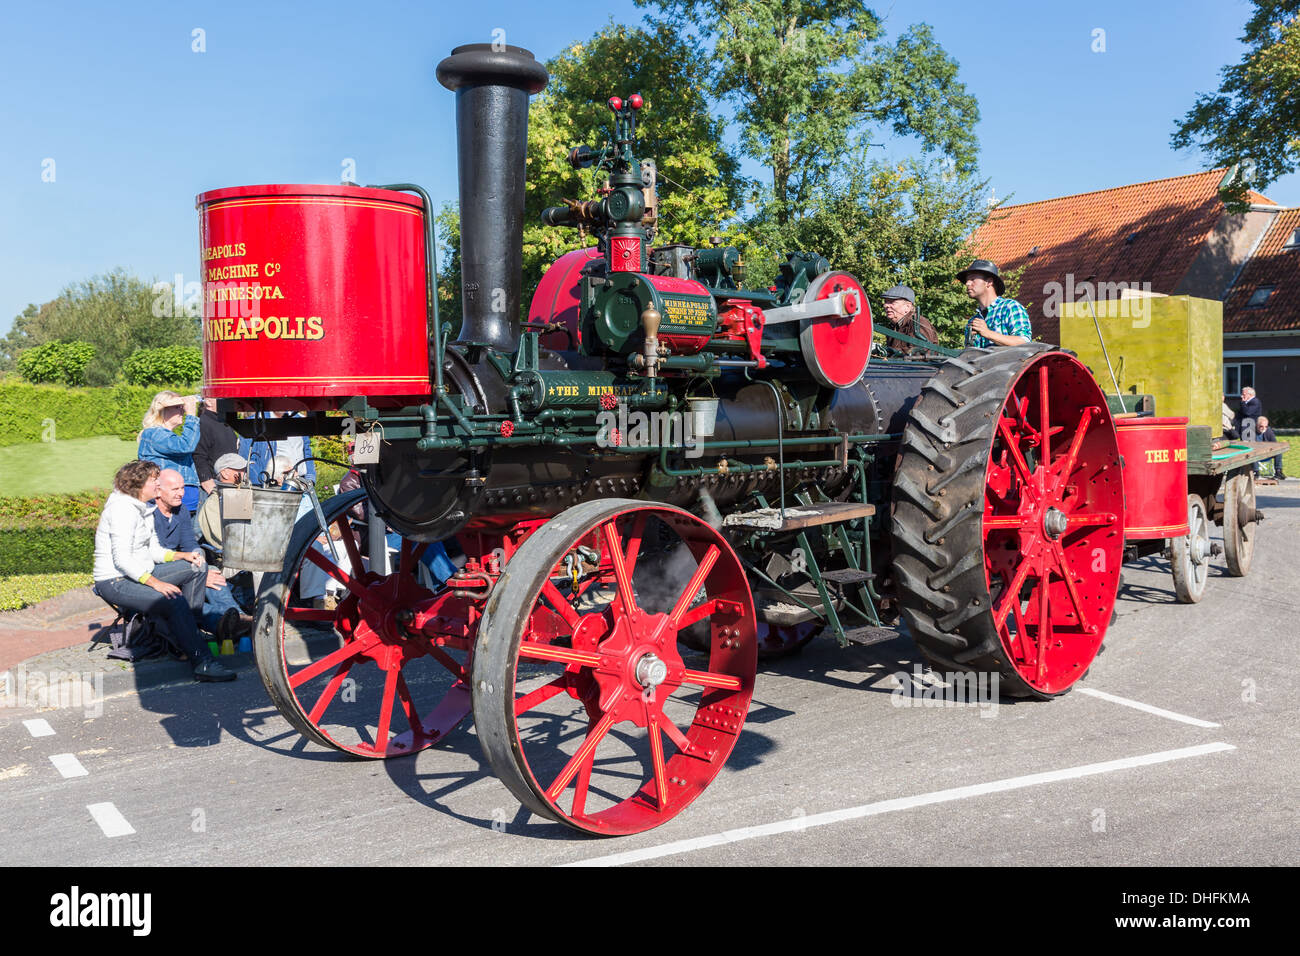 Nieuwehorne, Pays-Bas - sep 28 : vieux tracteur à vapeur dans un coin de campagne au cours de la parade fête agricole flaeijel Banque D'Images